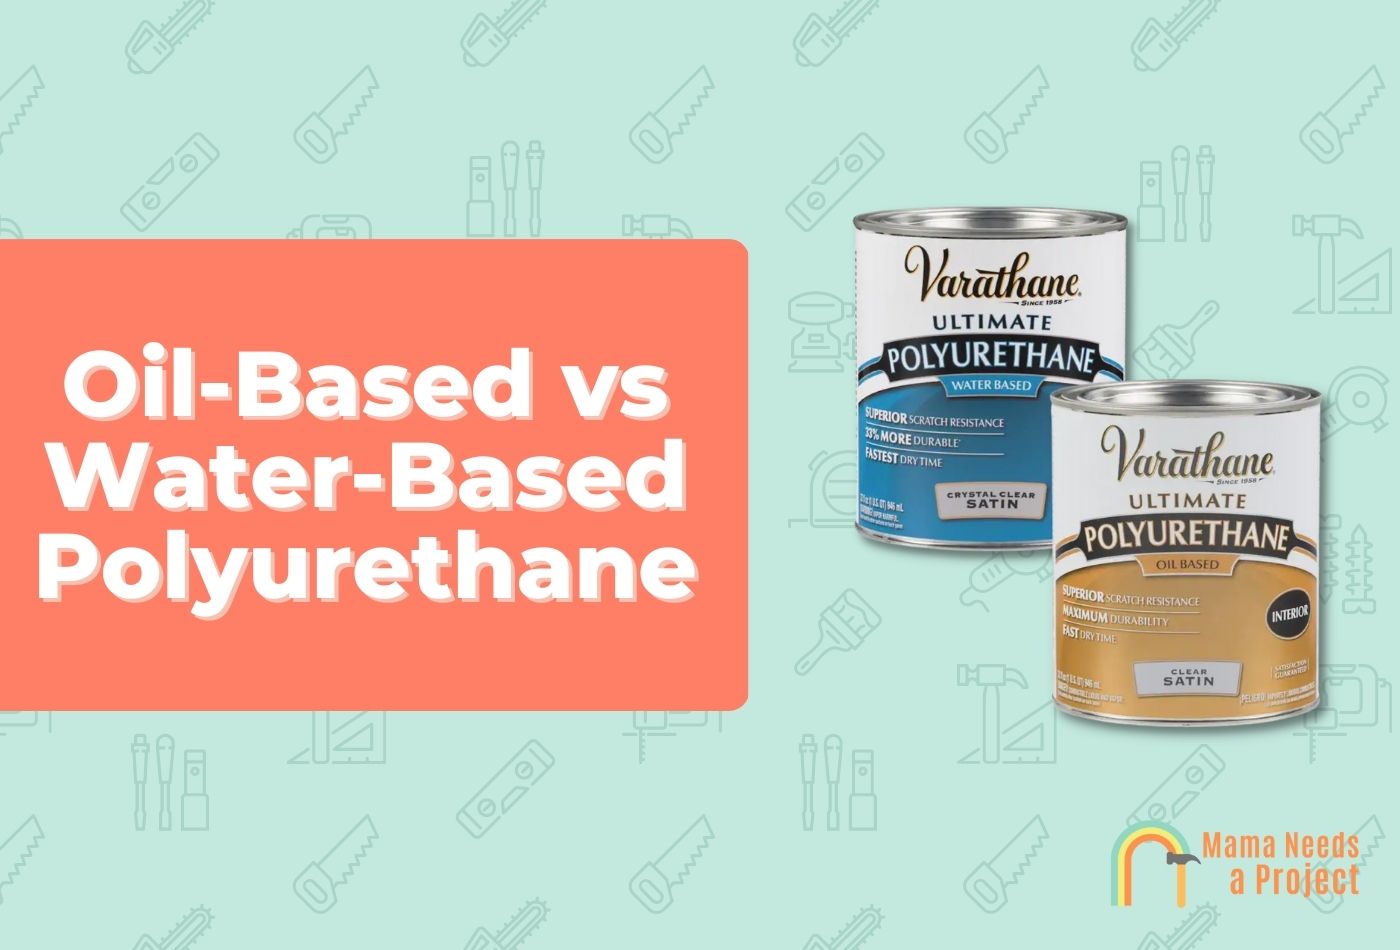 Oil-Based vs Water-Based Polyurethane